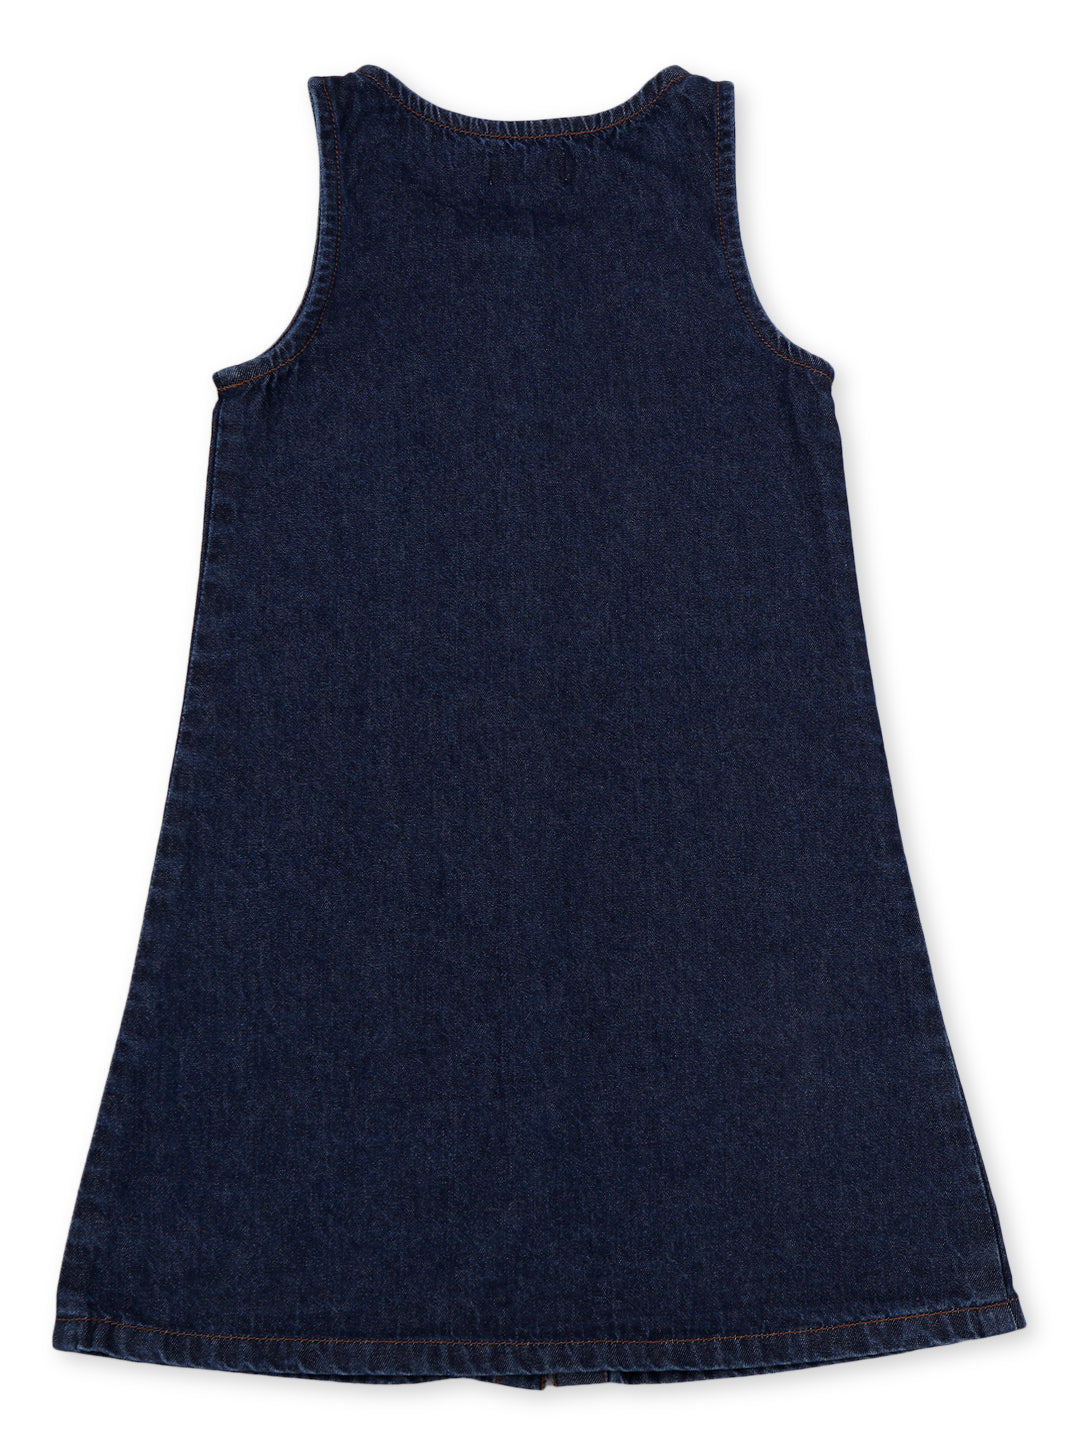 Girls Navy Blue Cotton Denim Solid Dress